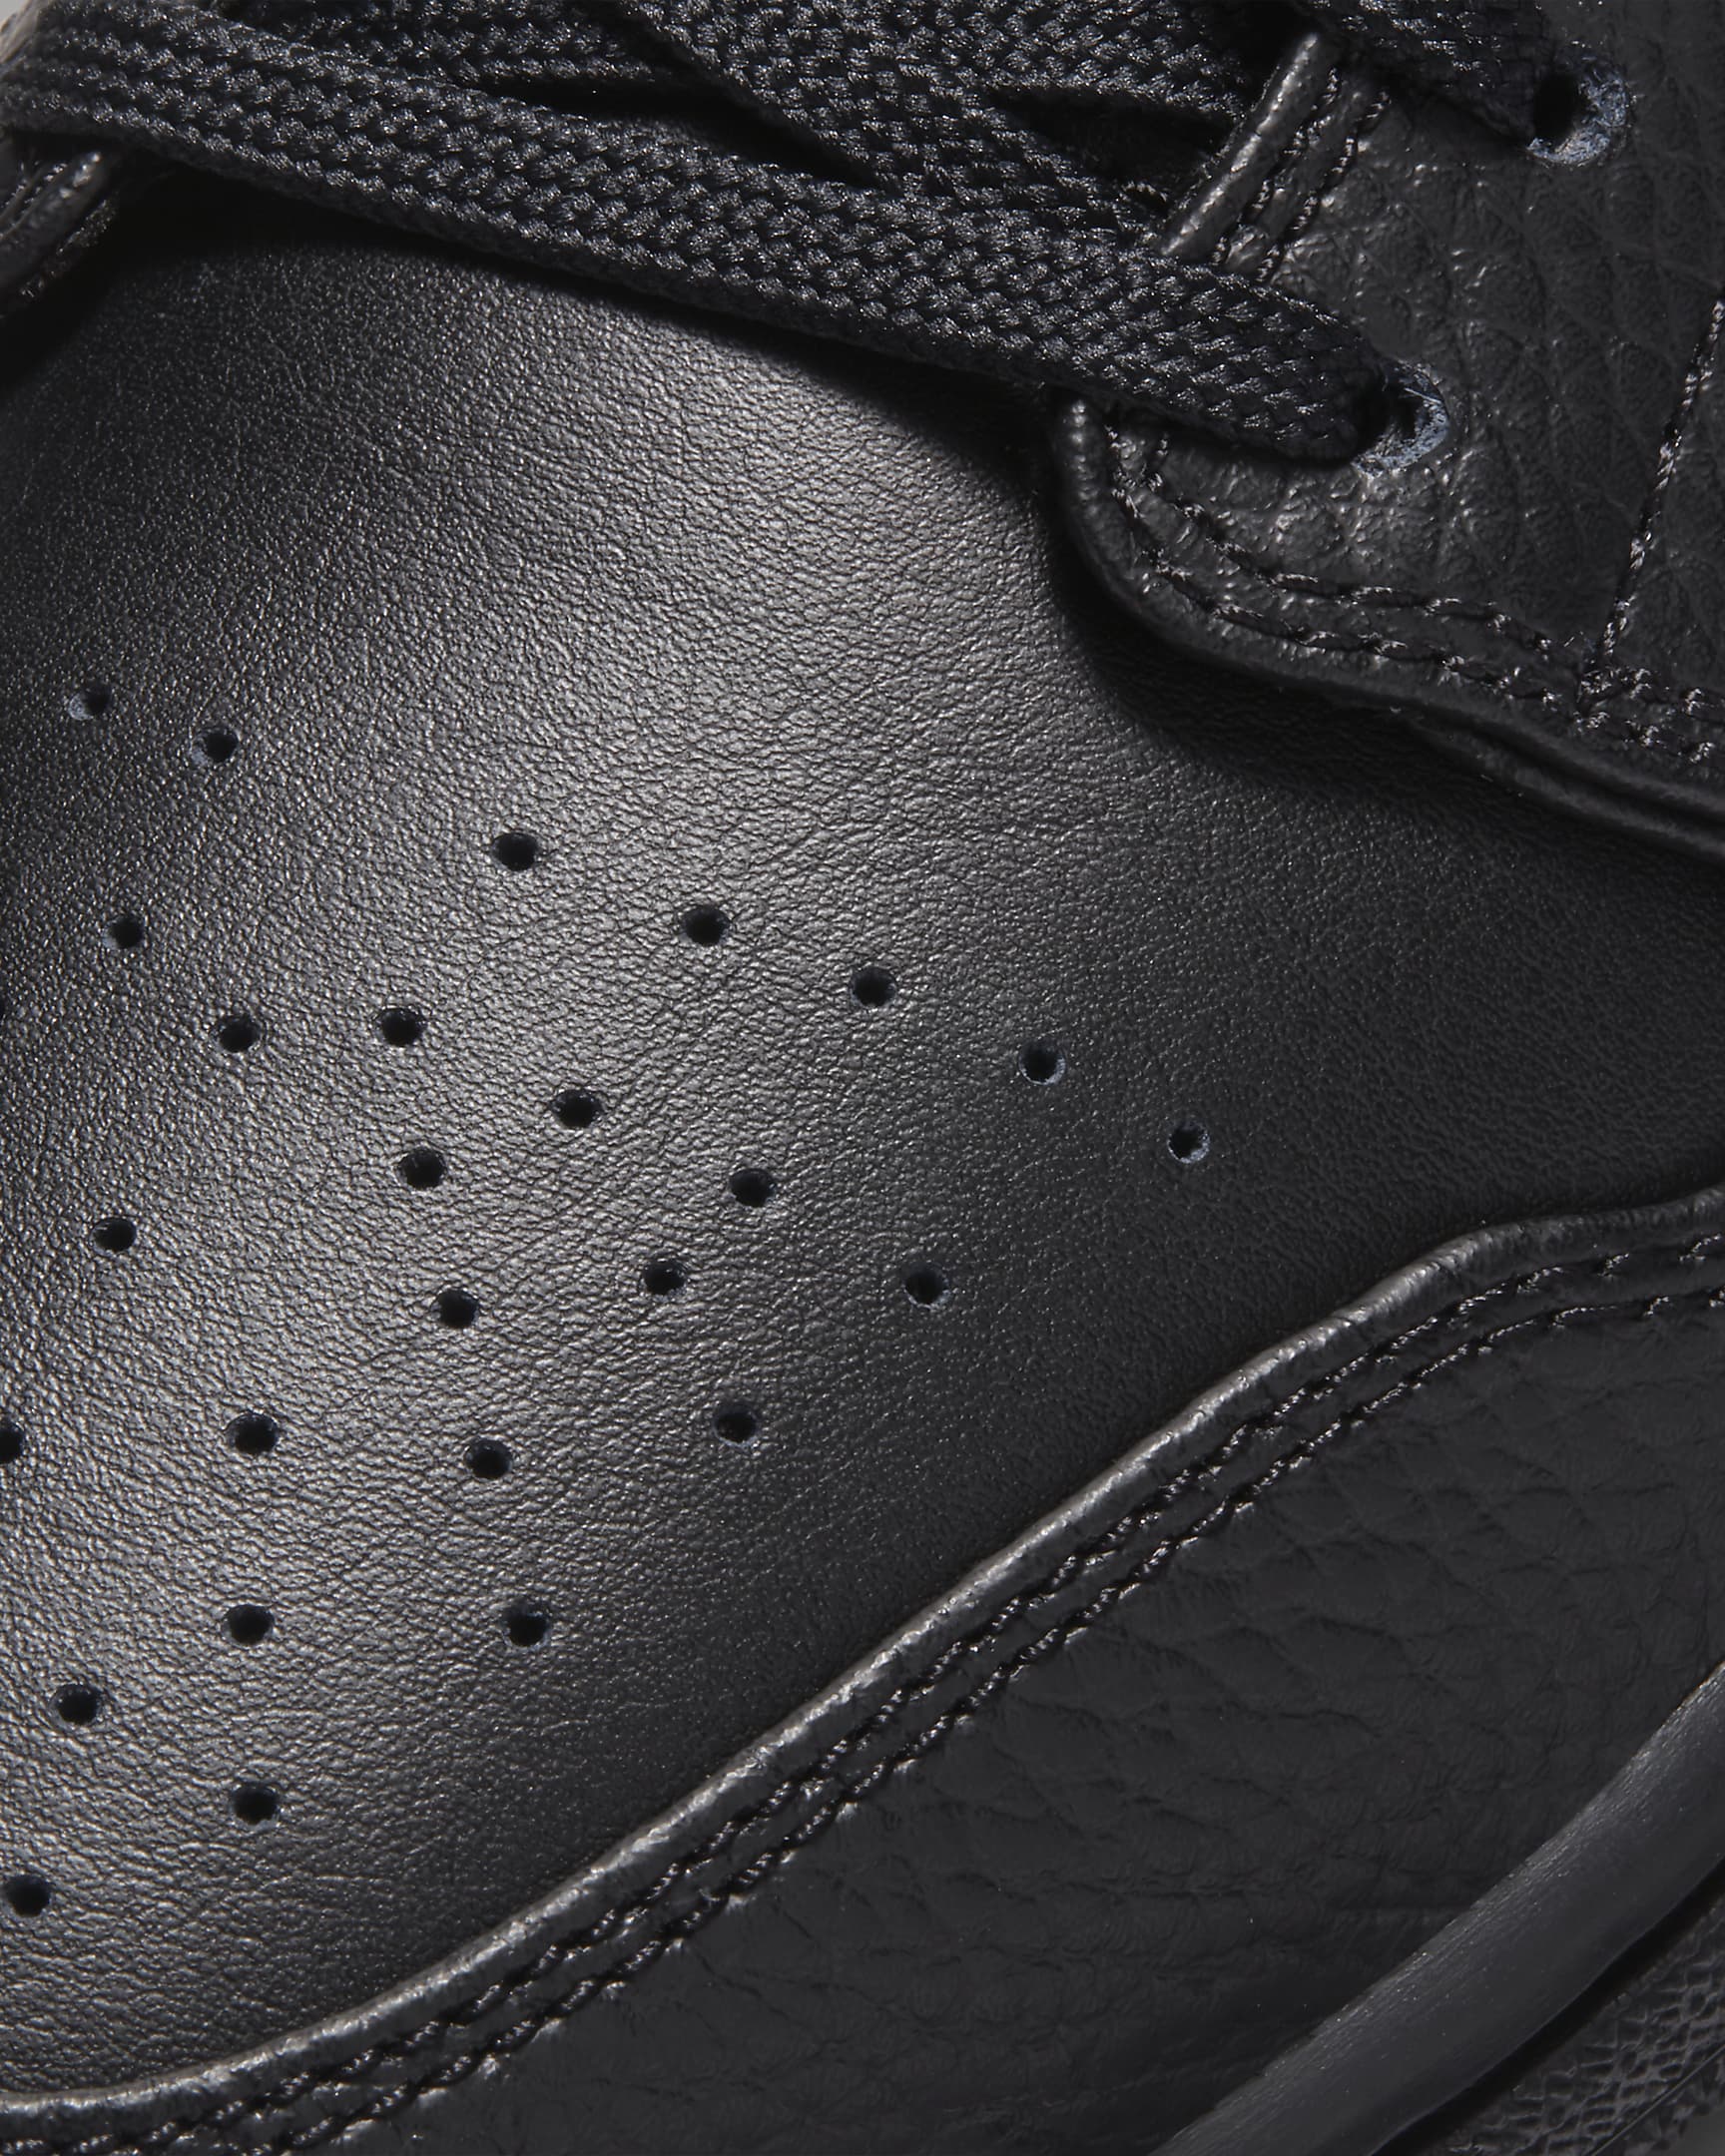 Air Jordan 1 Low Men's Shoes - Black/Black/Black